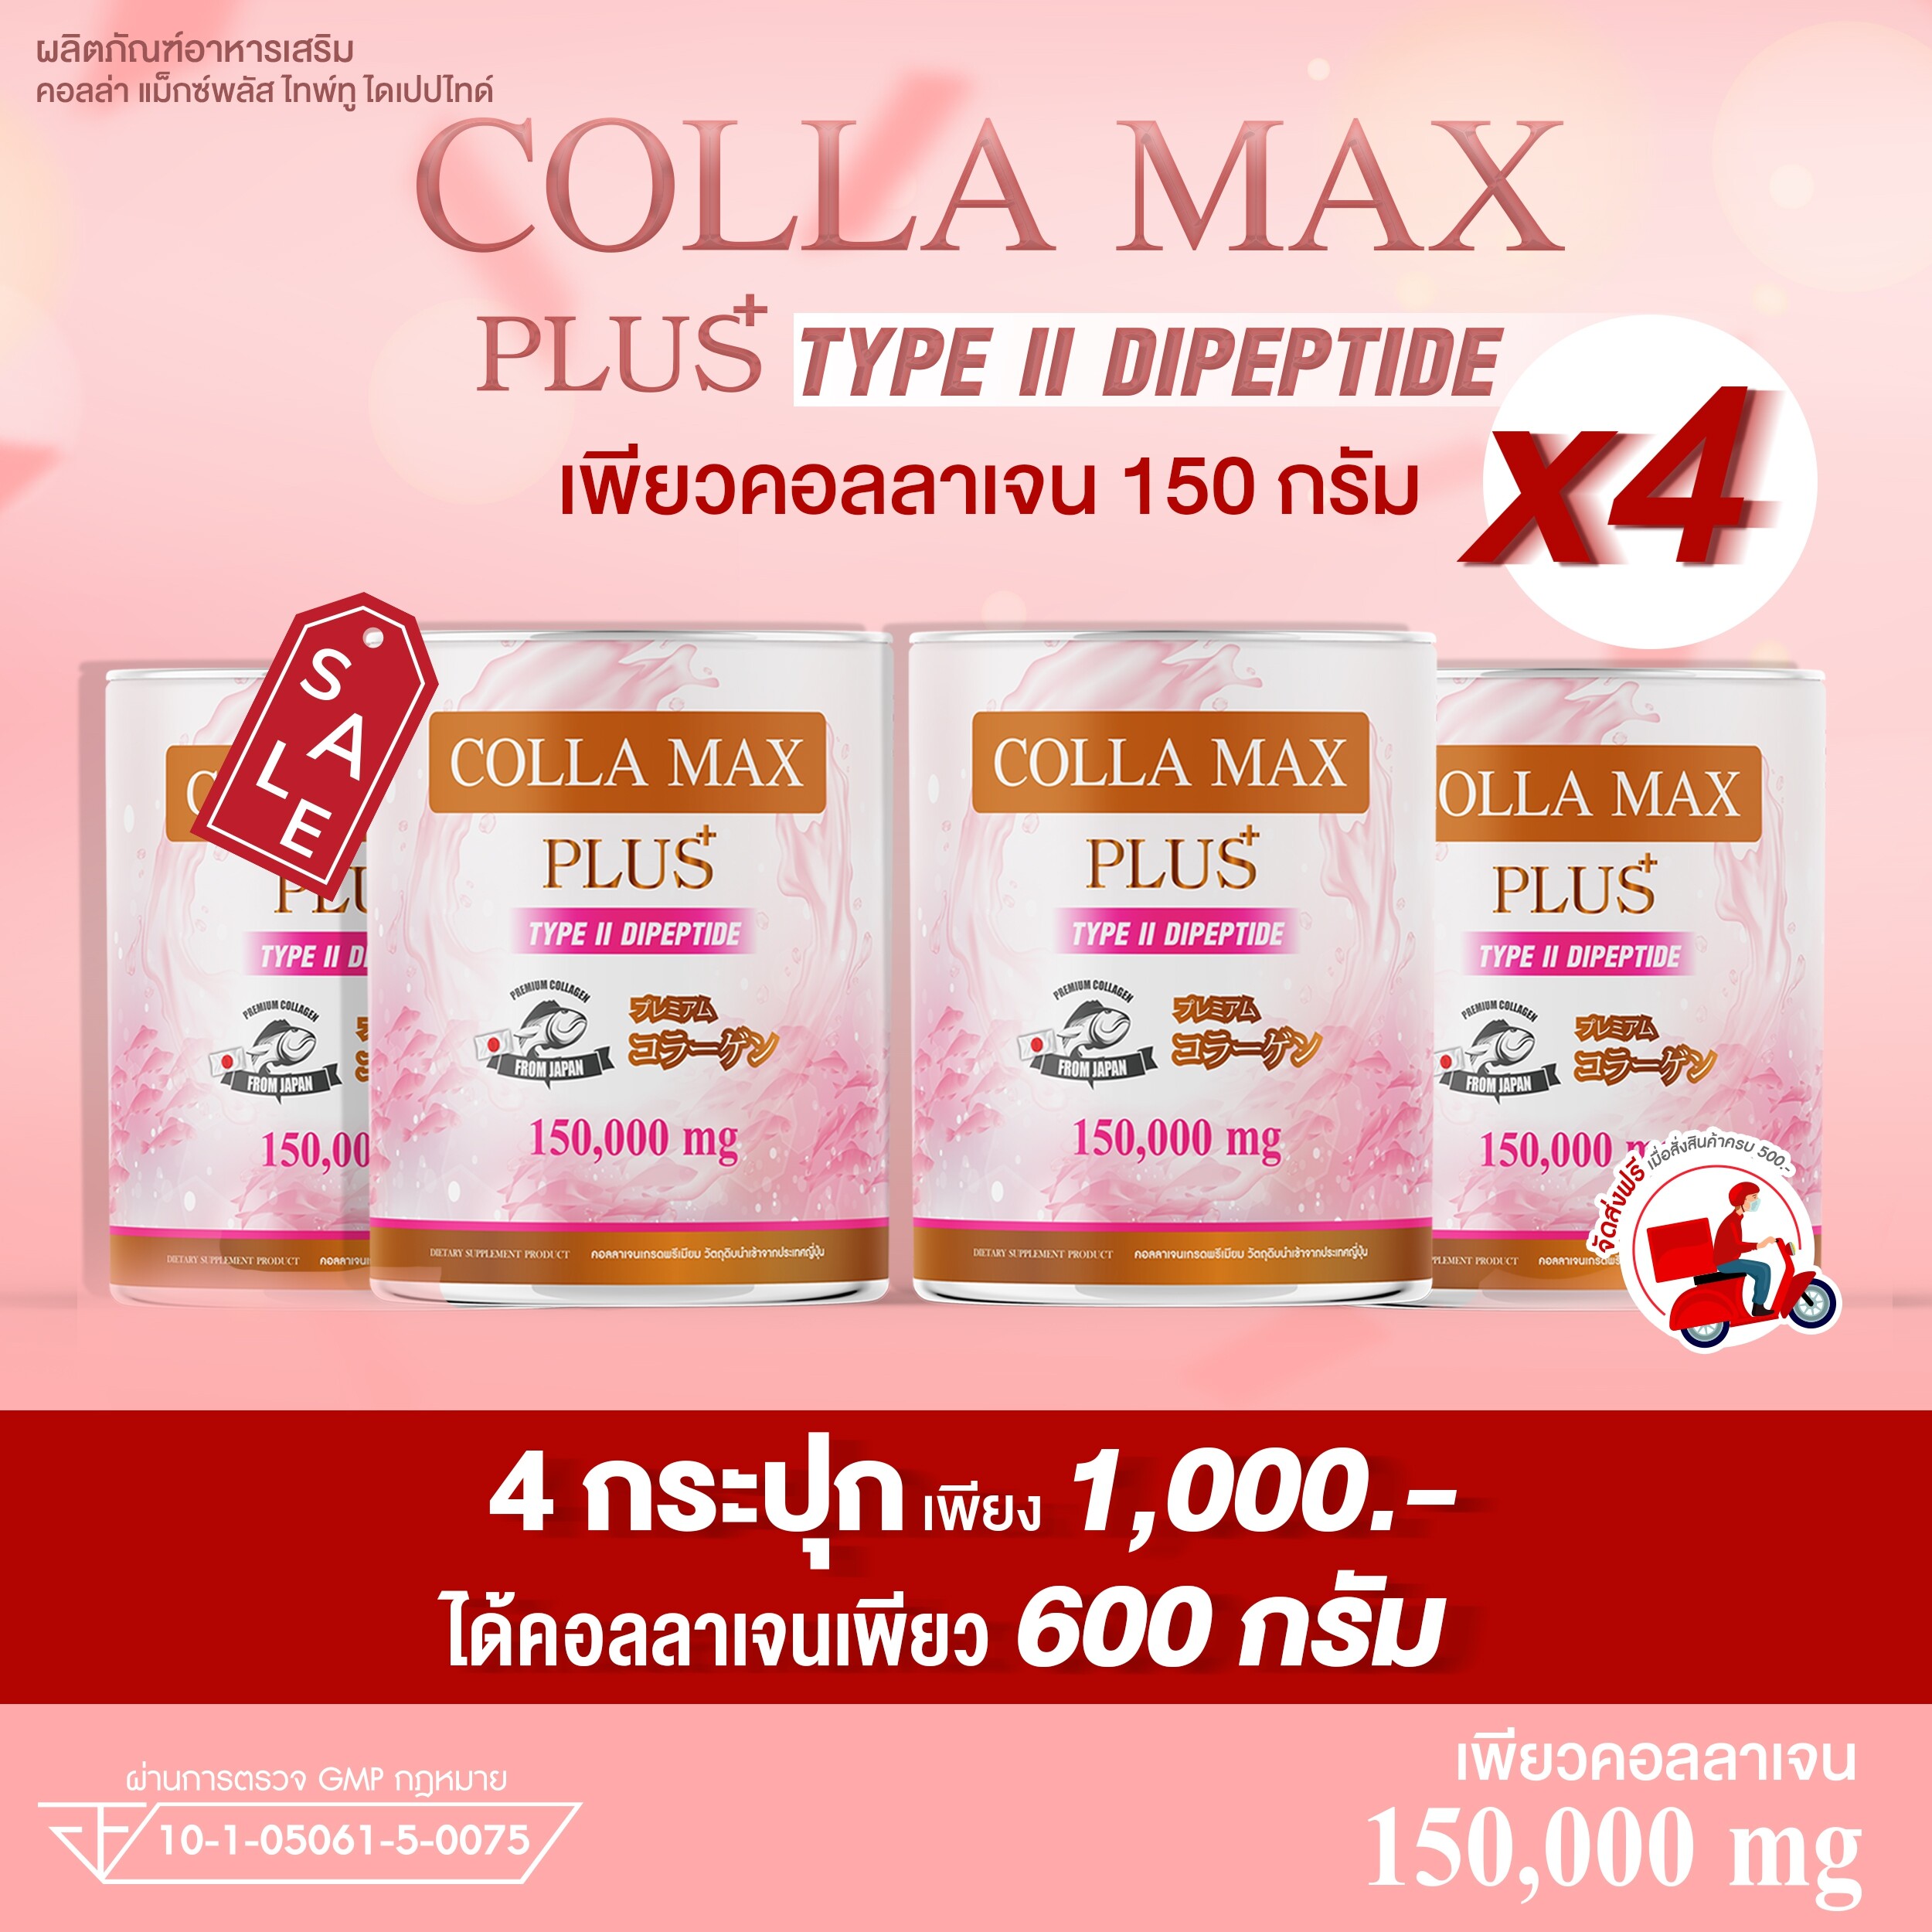 🔥ลดกระหน่ำ 50-60%🔥 เพียวคอลลาเจน ปริมาณ 600 กรัม🔥 4 กระปุก ทานได้ 4 เดือน >>COLLA-MAX เพียวคอลลาเจนแท้จากญี่ปุ่น